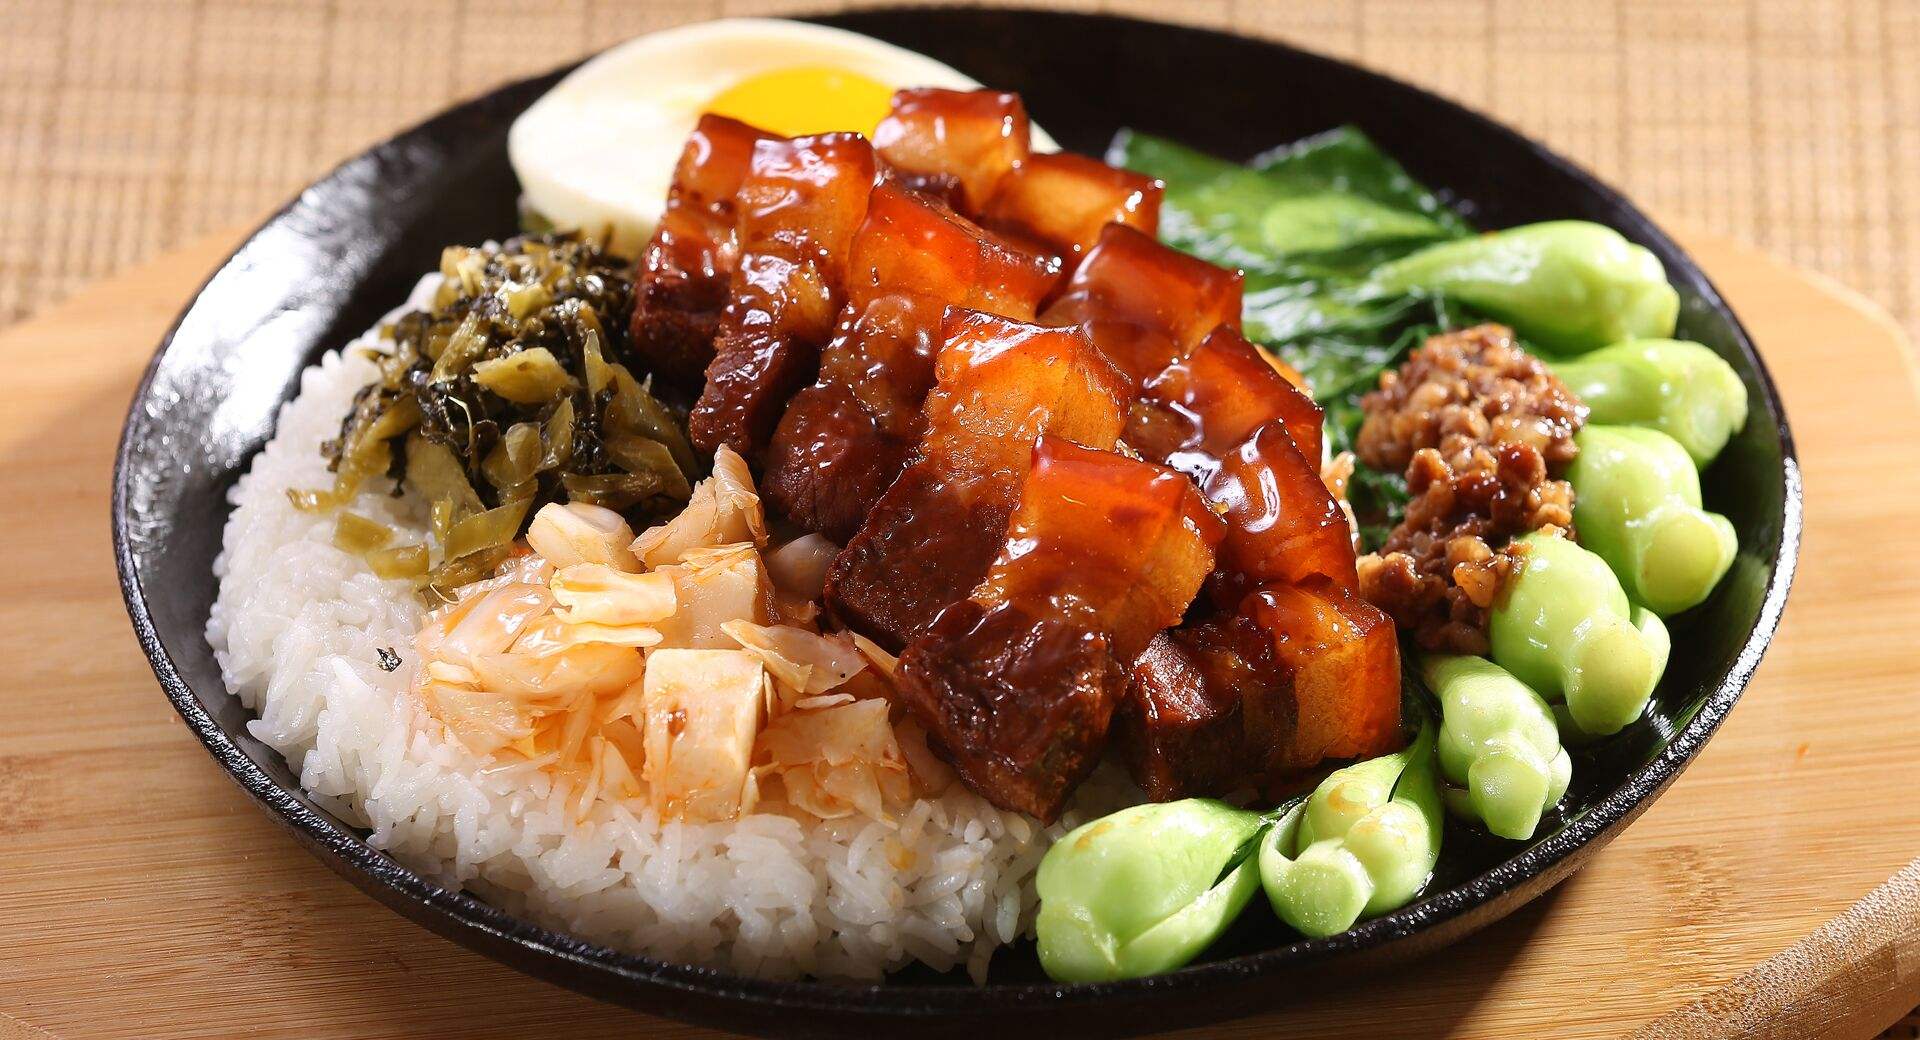 经典制作台湾卤肉饭 & 芋圆冰 (Sri Petaling)菜单 | foodpanda Kuala Lumpur美食外卖